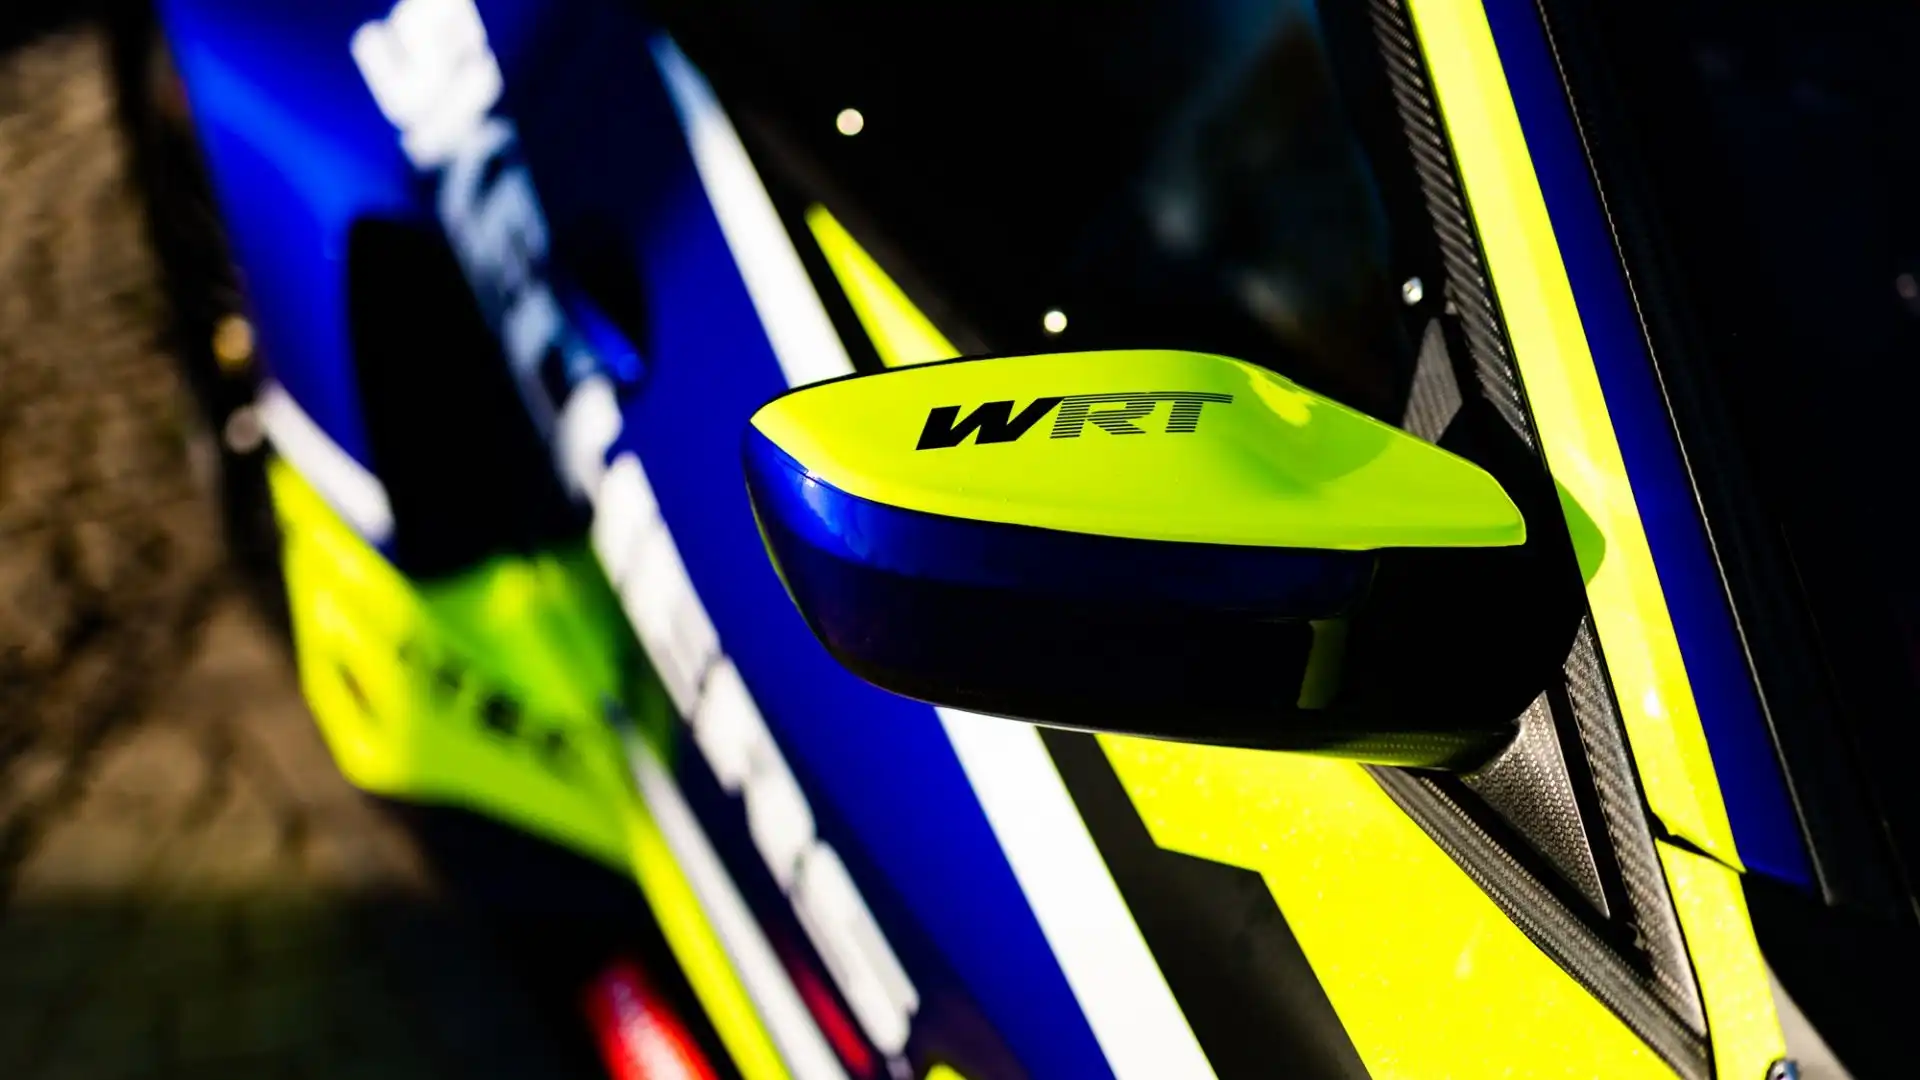 Valentino Rossi non guiderà più l'Audi, ma una BMW M4 GT3, presentata negli scorsi giorni dal team WRT (Photo Credits: Brecht Decancq)